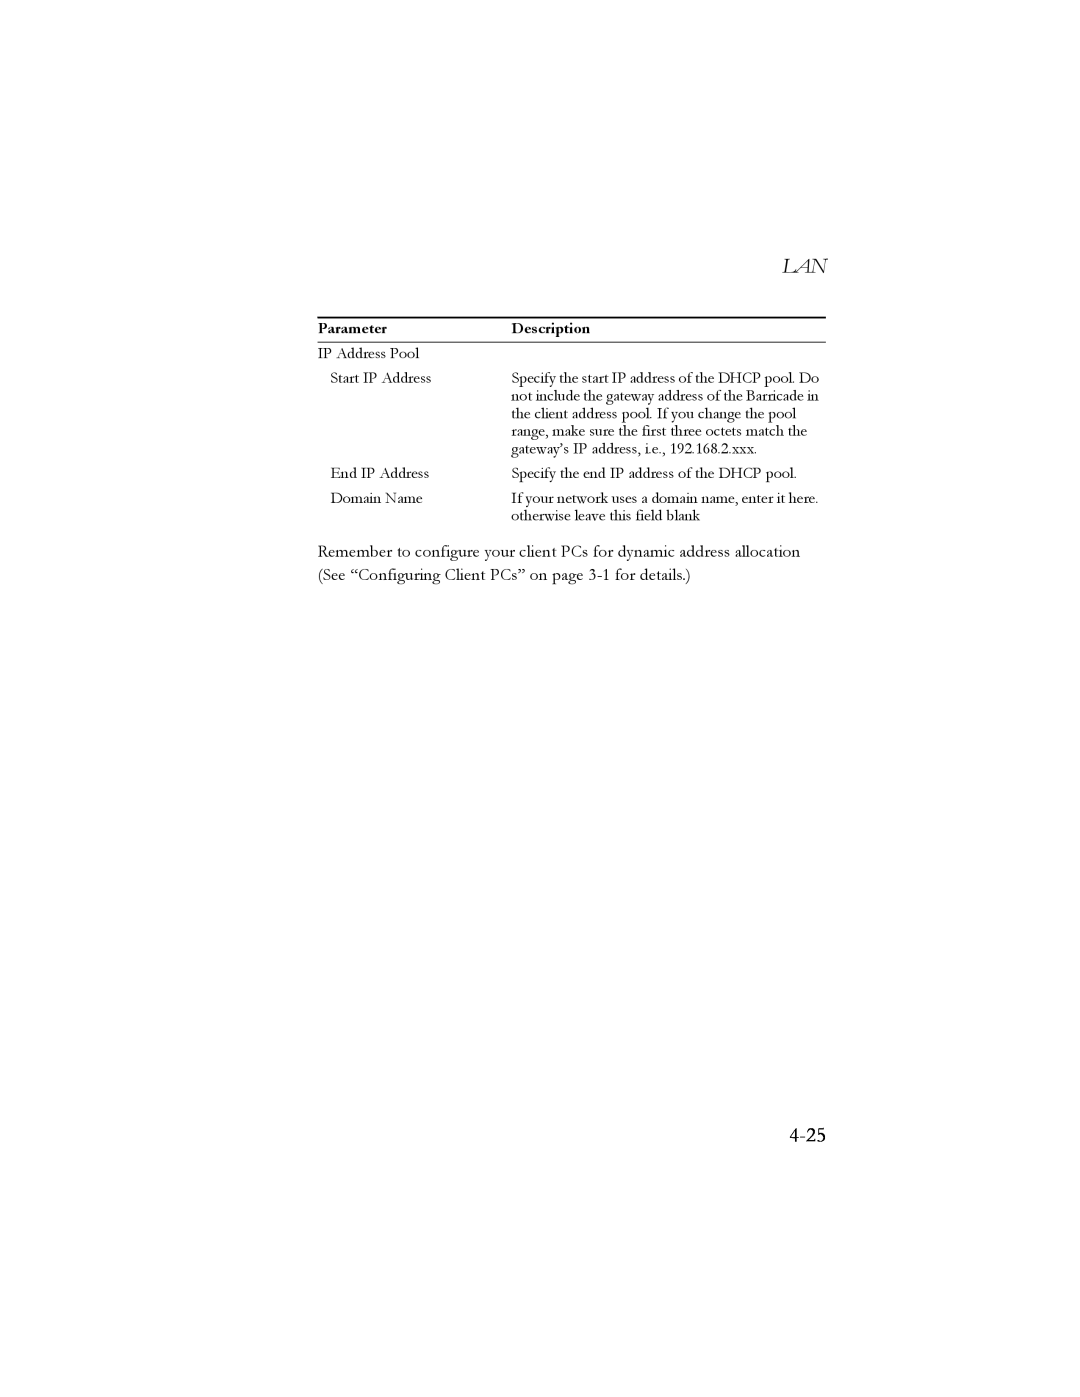 SMC Networks SMC7404BRA EU manual 4-25, Parameter, Description 